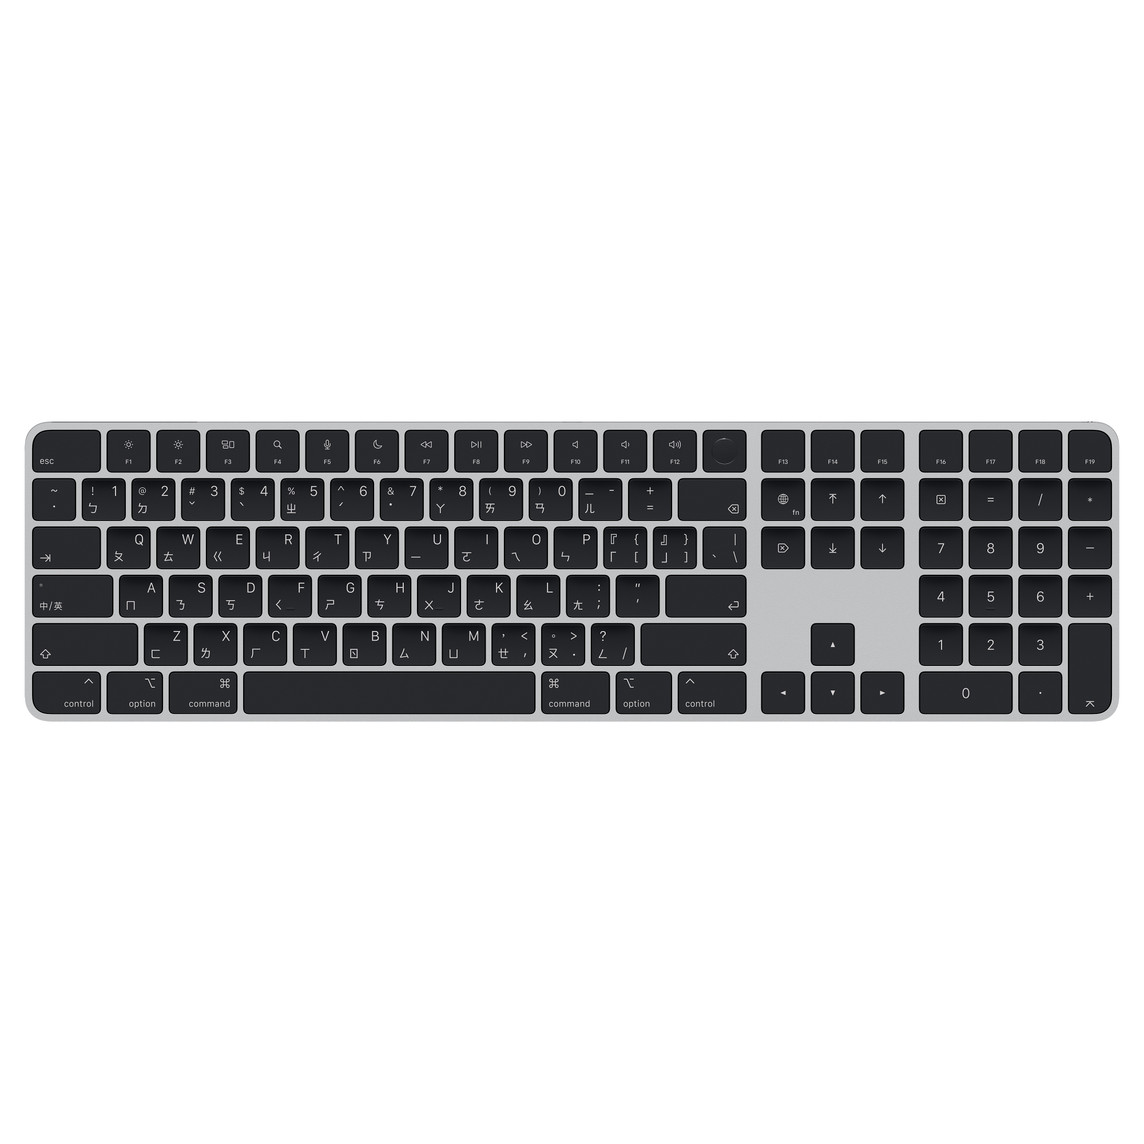 带有数字小键盘的白色妙控键盘，具有呈倒 T 形排列的箭头键和专用的上下翻页键。